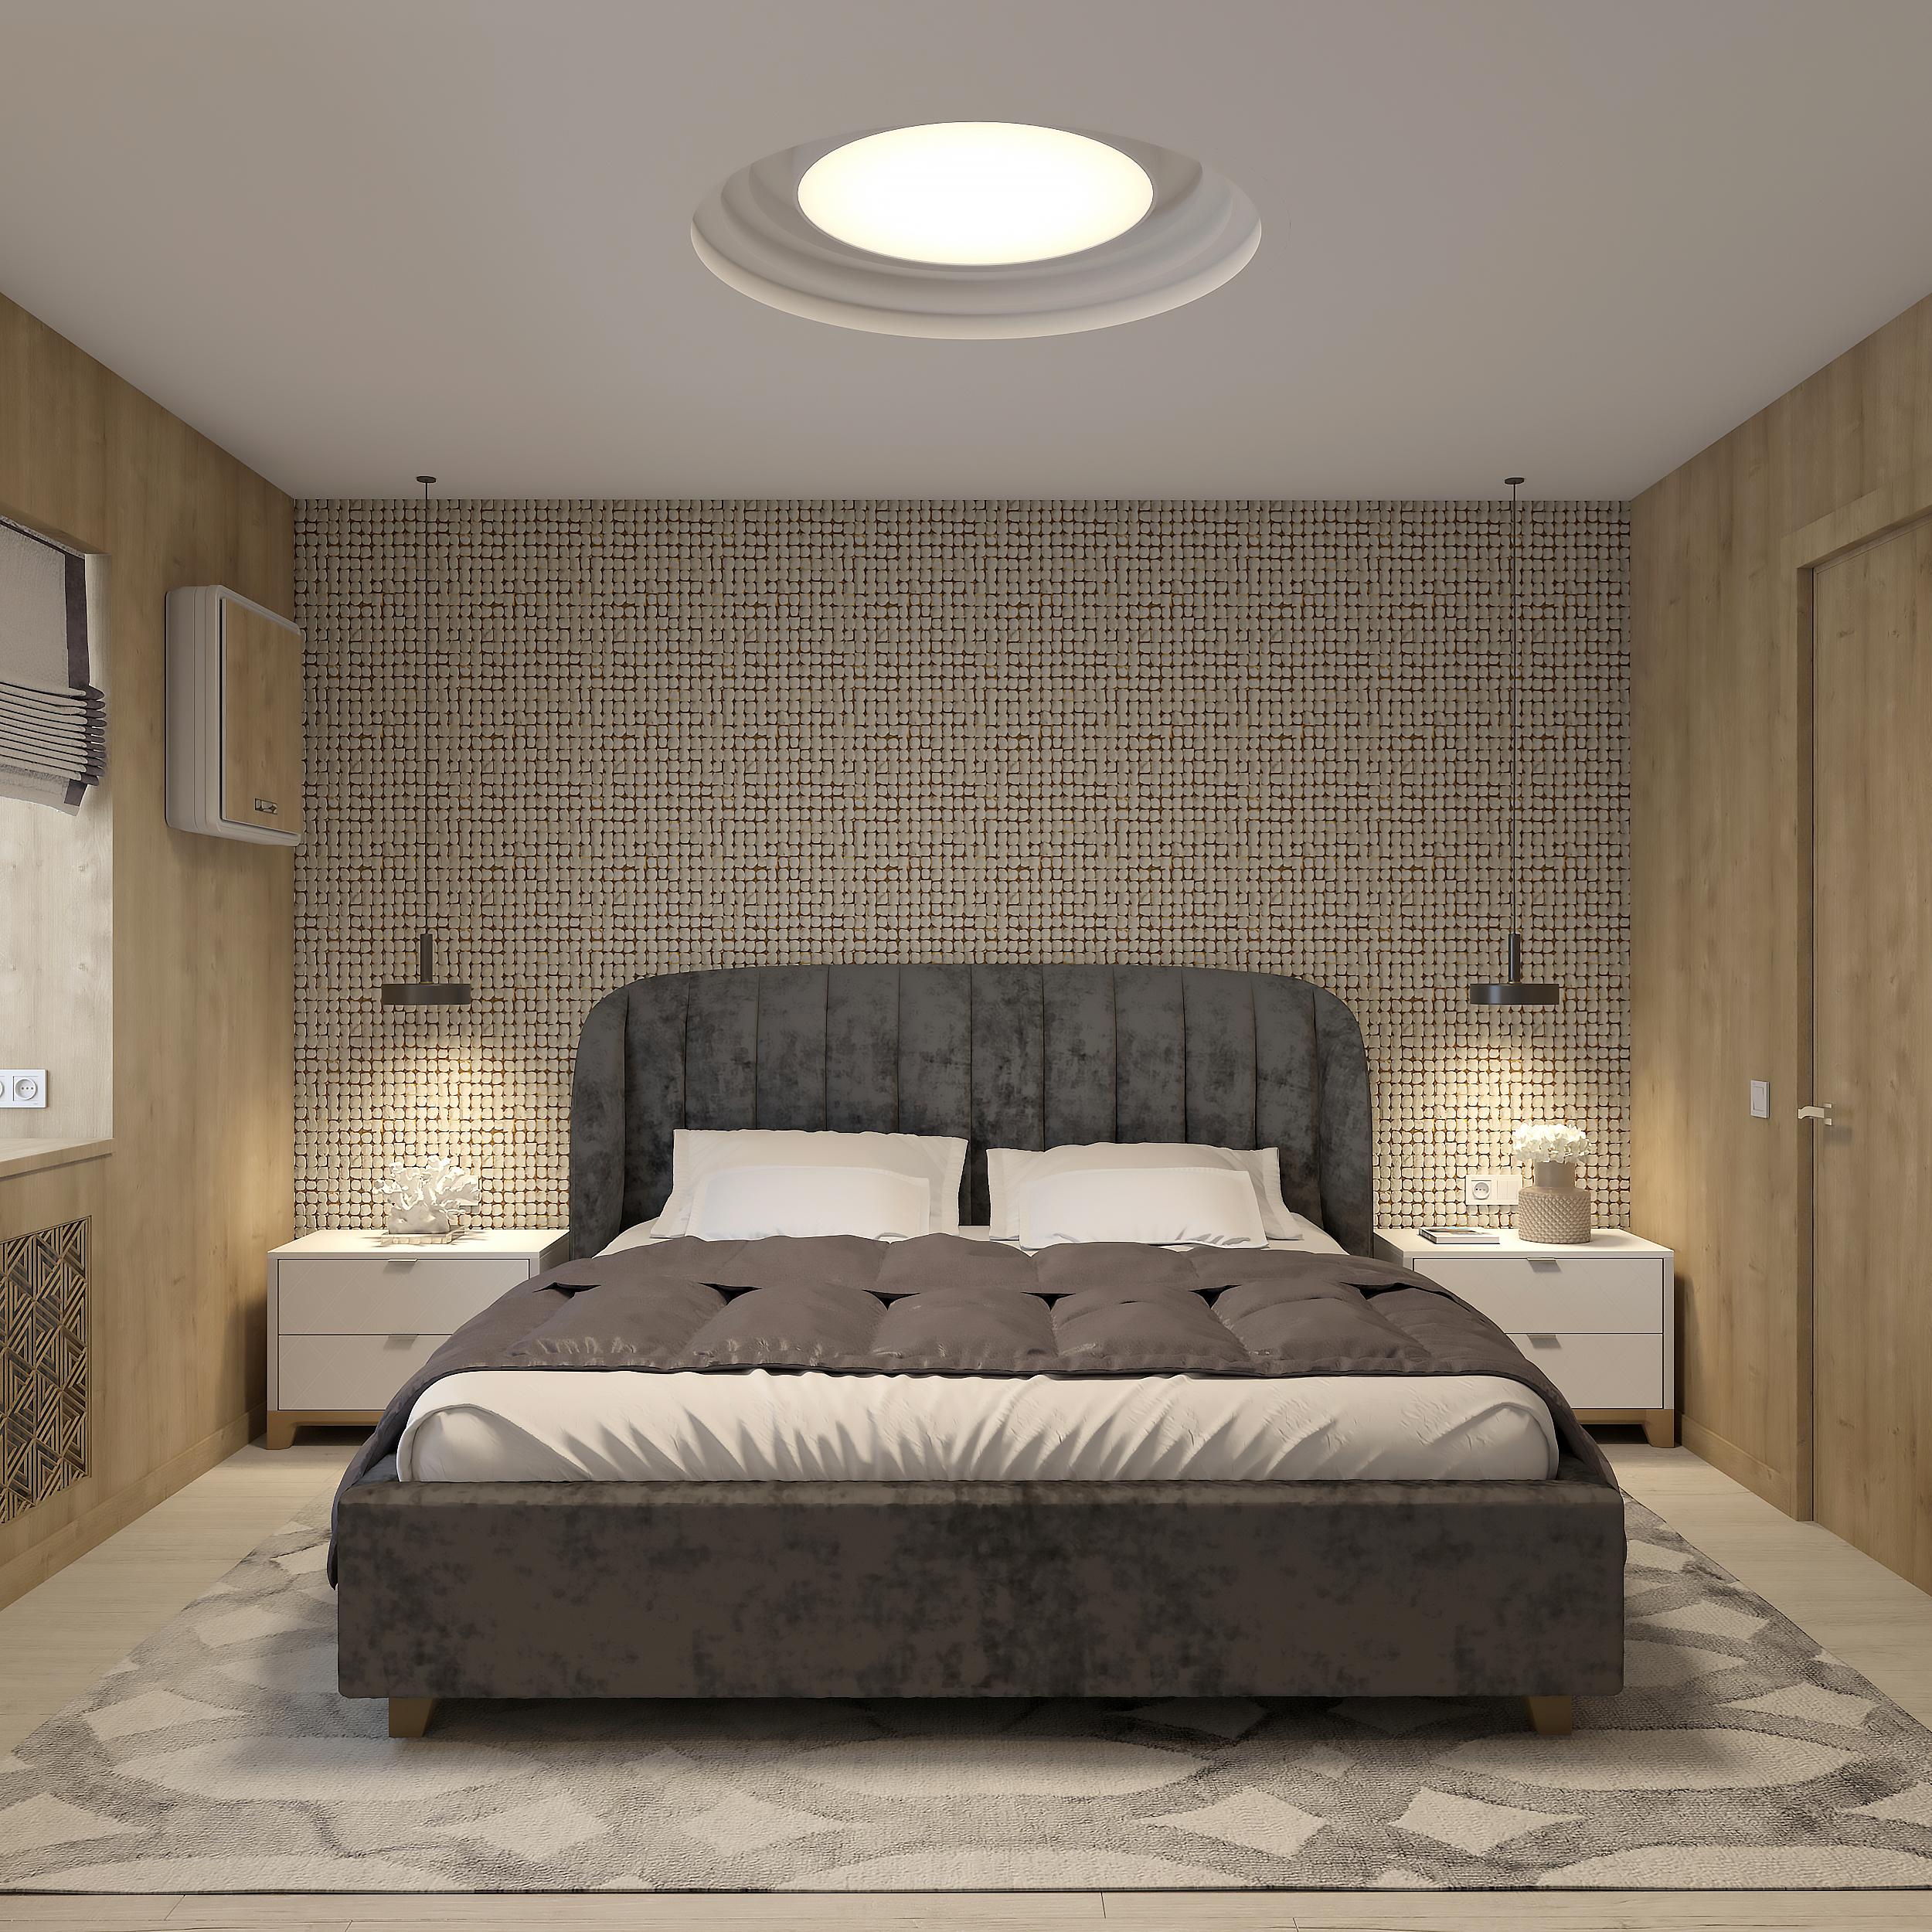 Интерьер спальни cветовыми линиями, подсветкой настенной, подсветкой светодиодной и светильниками над кроватью